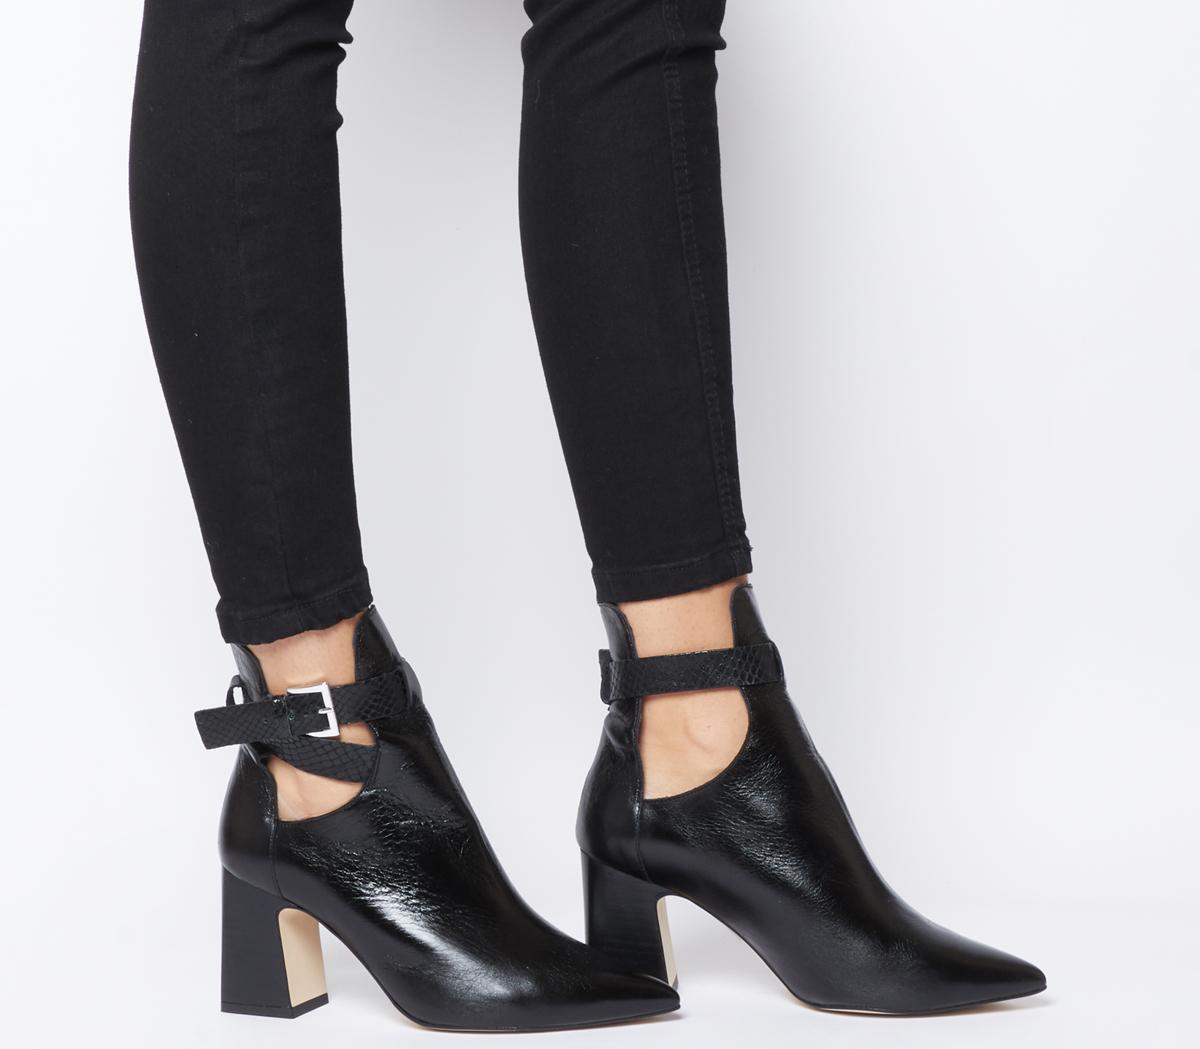 block heels boots